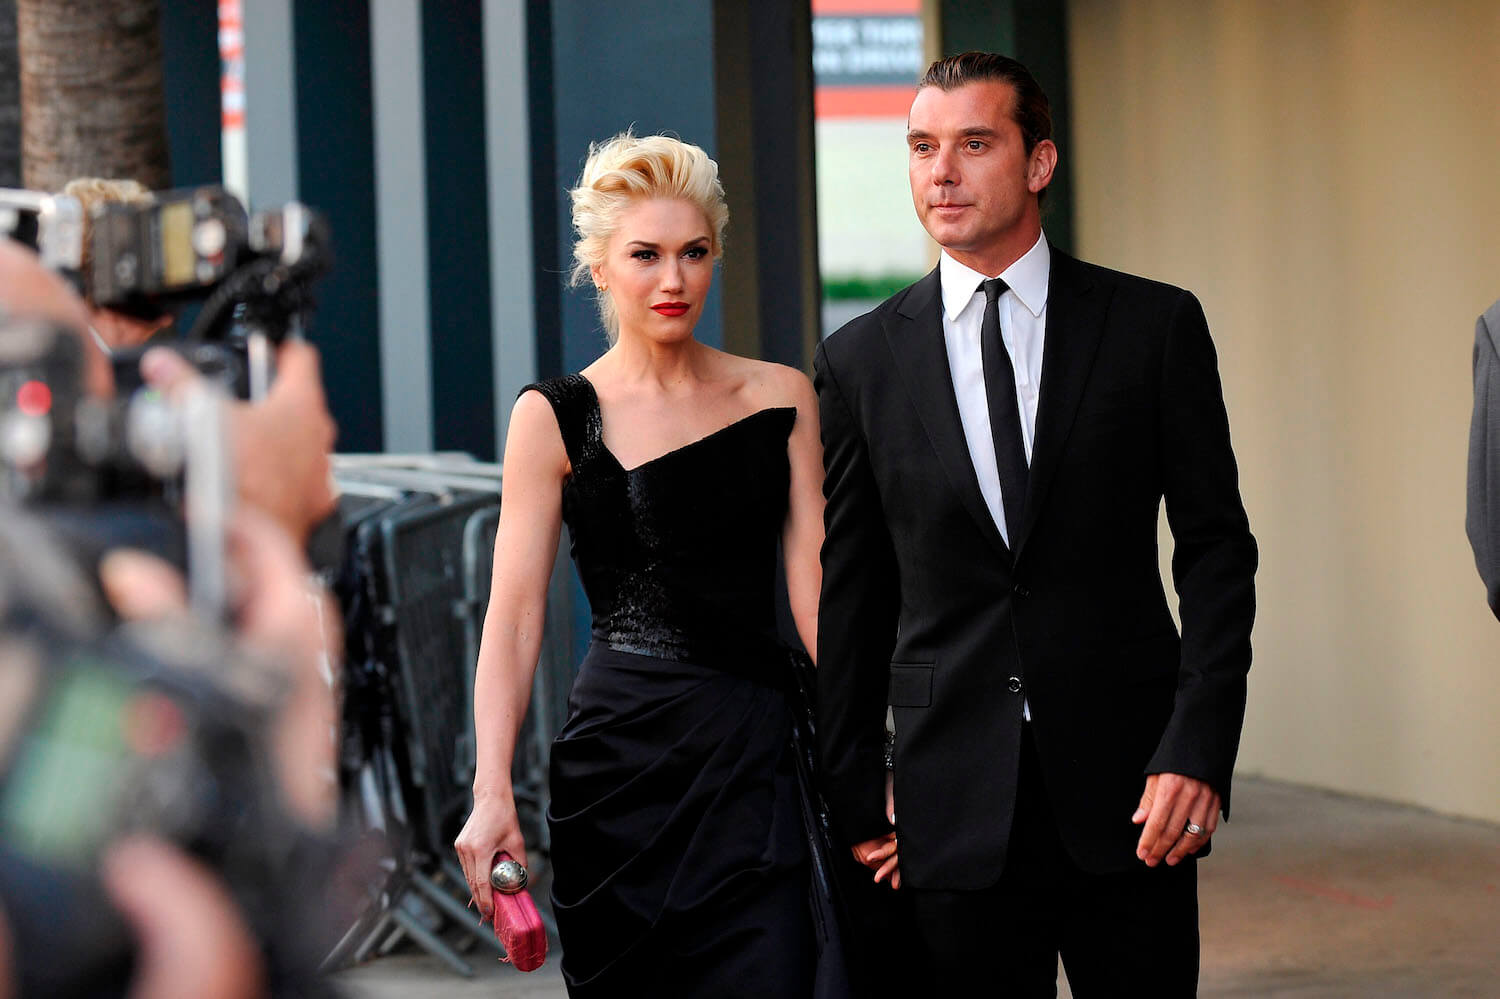 Gwen Stefani and Gavin Rossdale walking together in formalwear